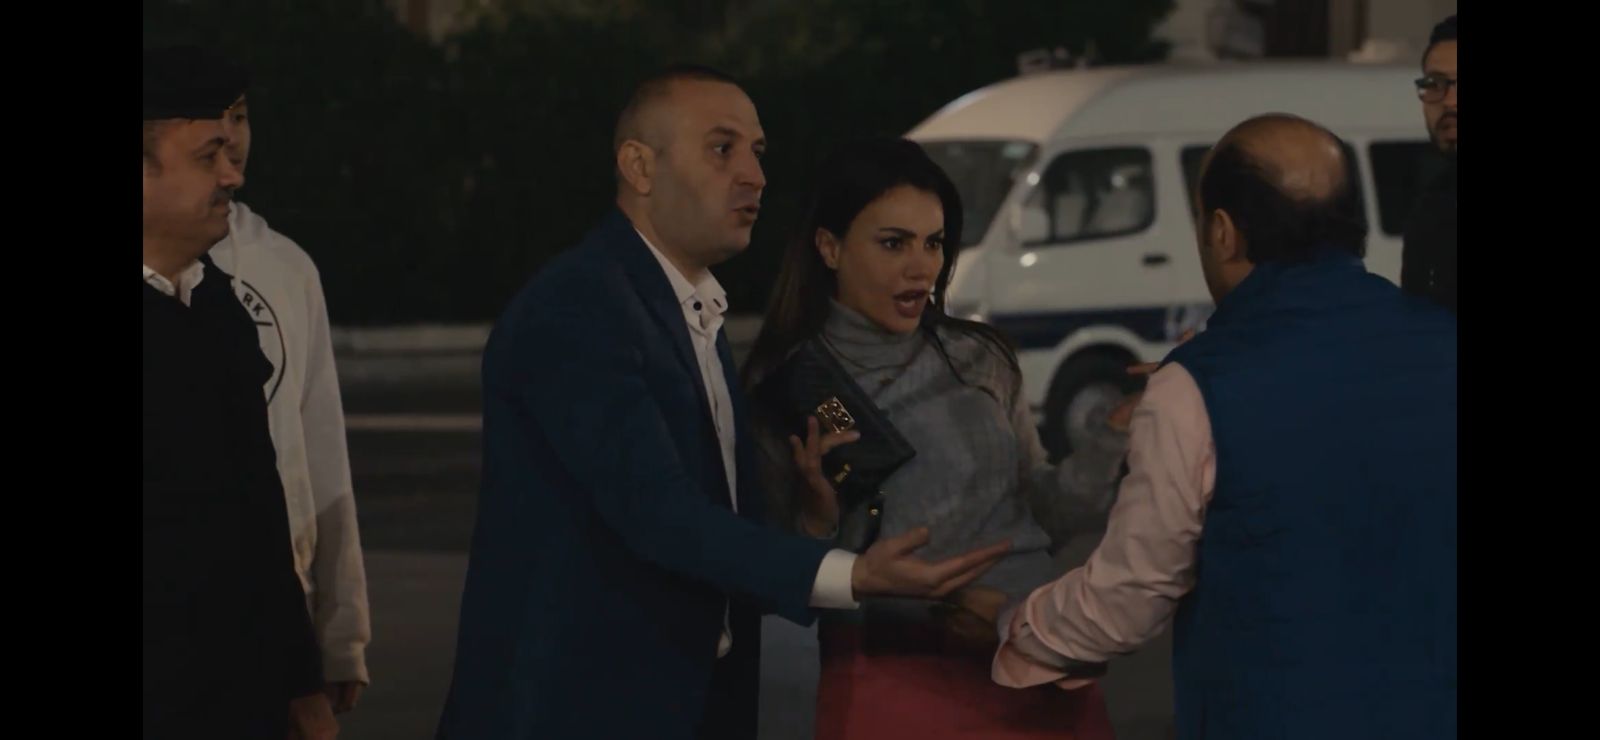 مسلسل حق عرب الحلقة 6  انكشاف سر دينا فؤاد وعملها الغير مشروع (3)